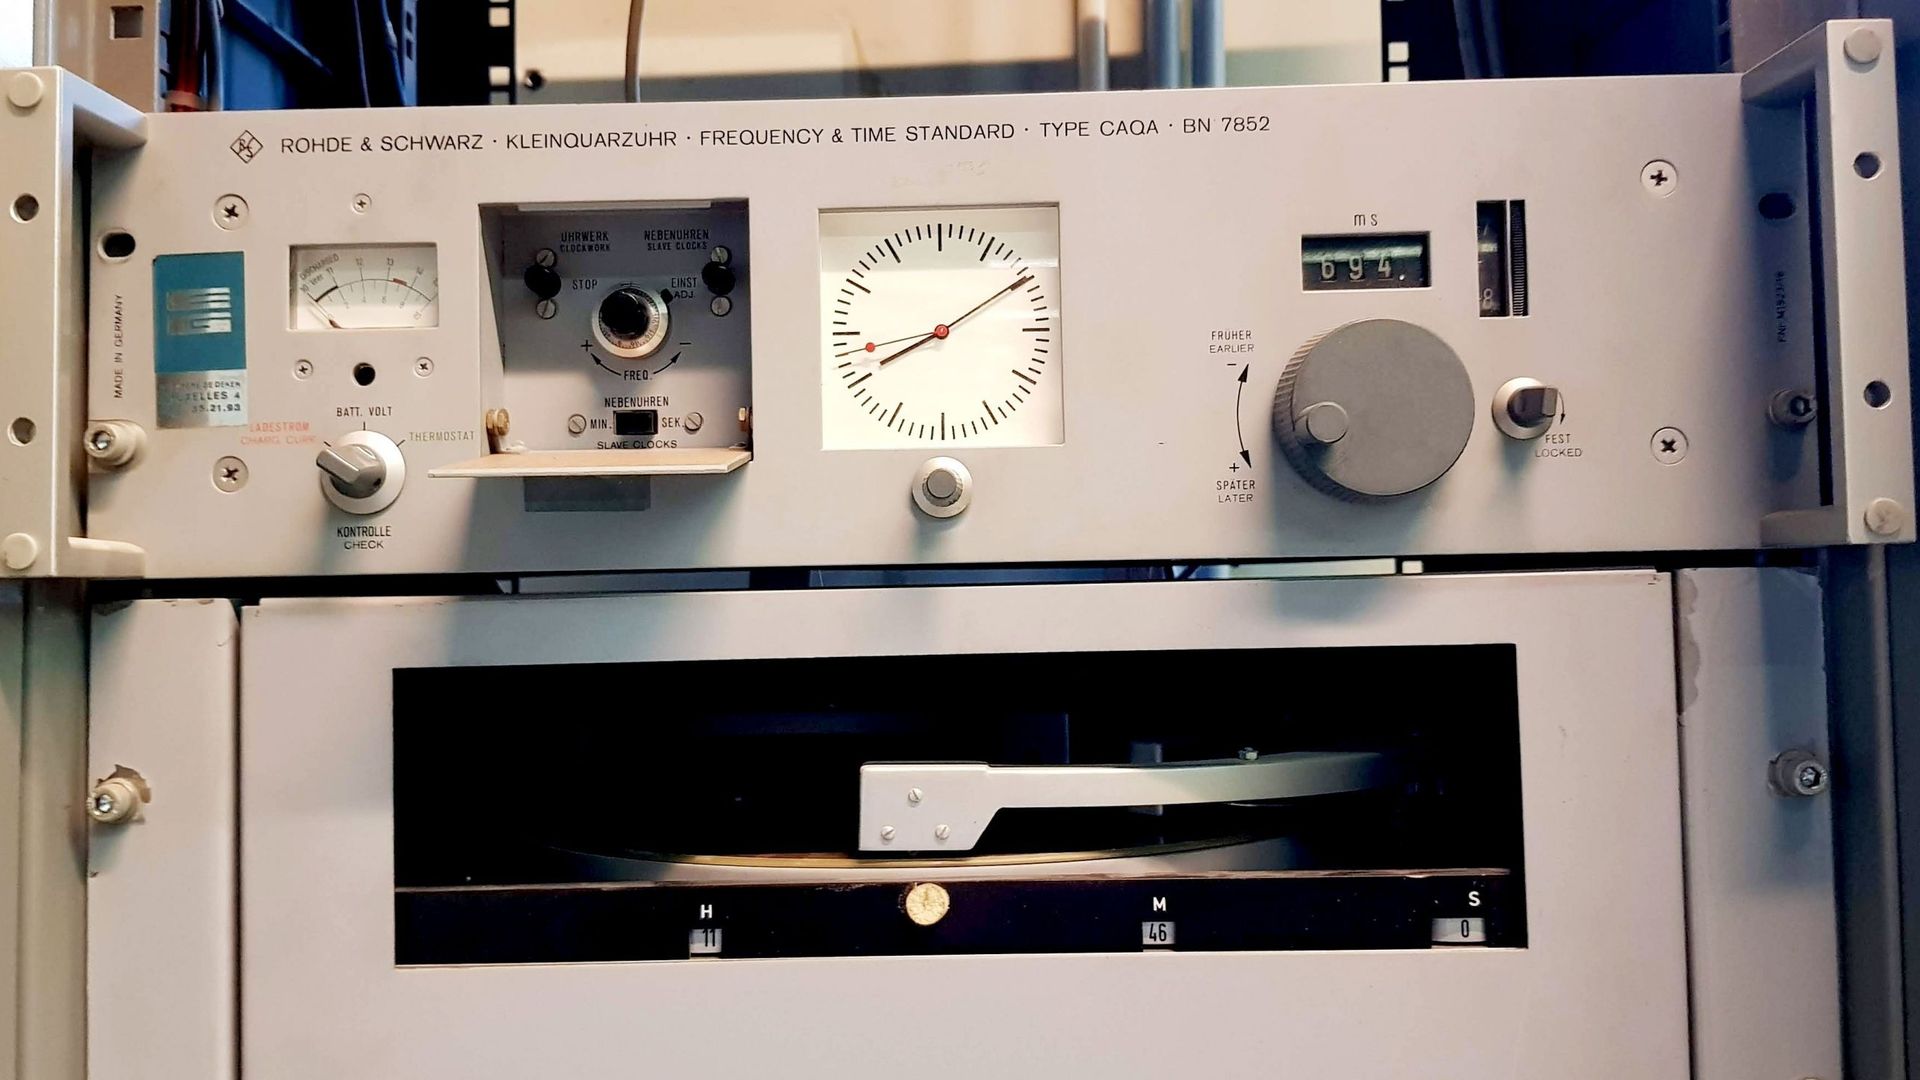 Le système de disque de la deuxième génération de l'horloge parlante en service entre 1972 et 2000